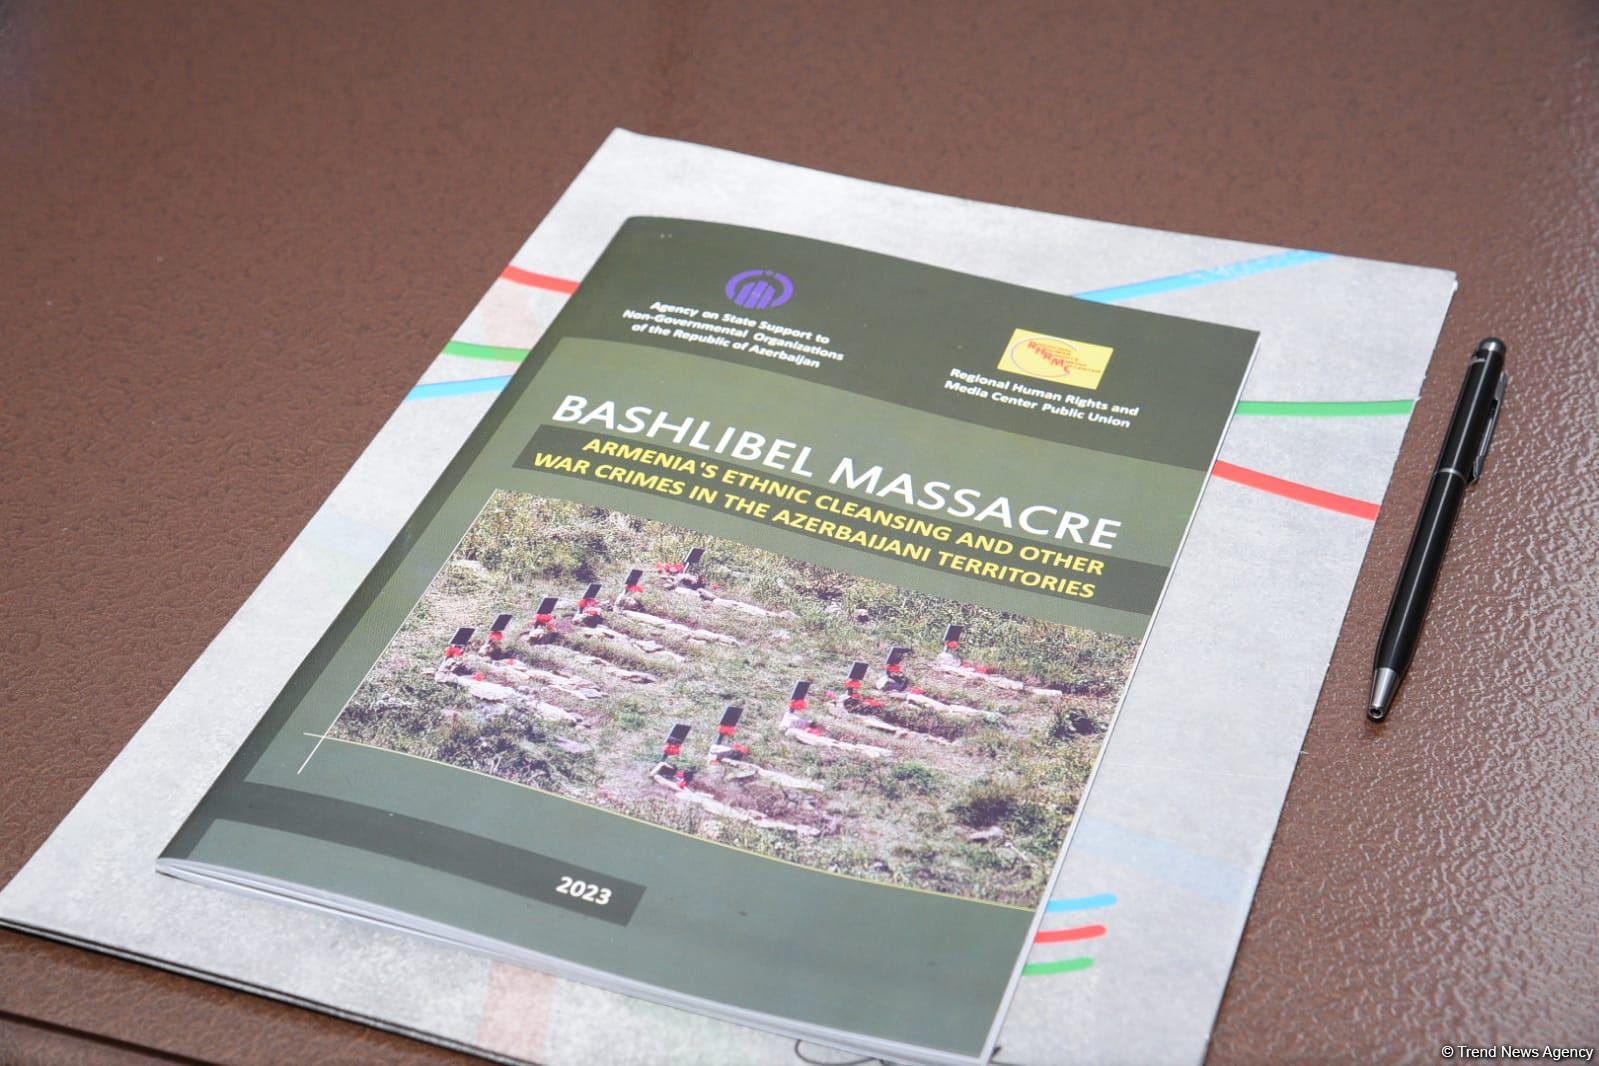 Подготовлен доклад на английском языке о резне в Башлыбеле (ФОТО)